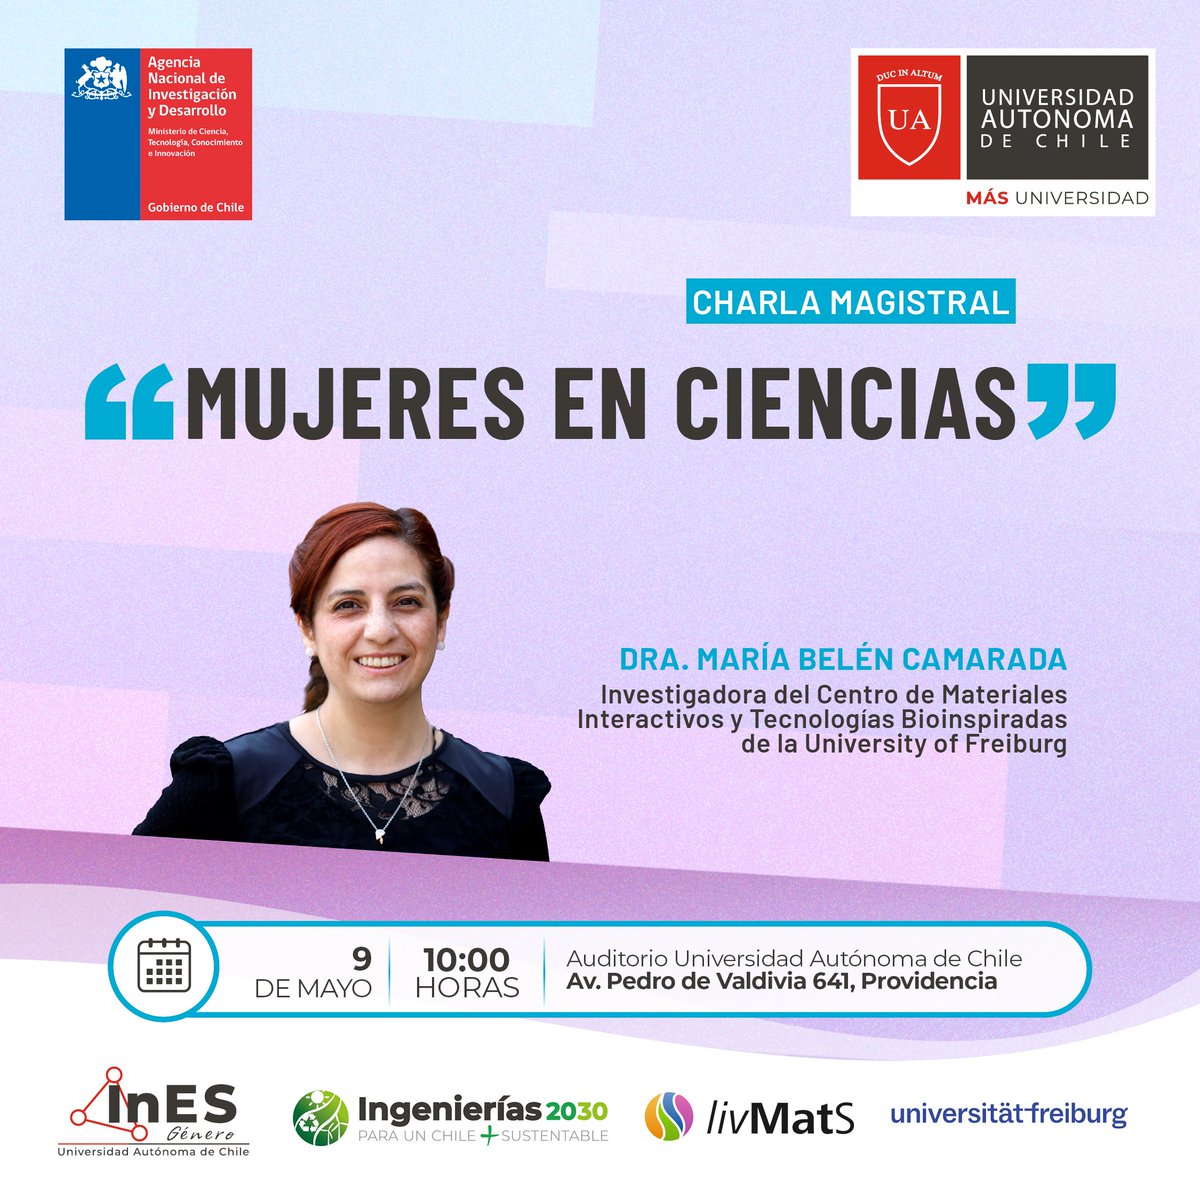 InES Género e Ingenierías 2030 de la @autonomadechile organizan la charla “Mujeres en Ciencias”, que impartirá la Dra. María Camarada, del Centro de Materiales Interactivos y Tecnologías Bioinspiradas de la University of Freiburg. Inscripciones abiertas: shorturl.at/cjNZ3